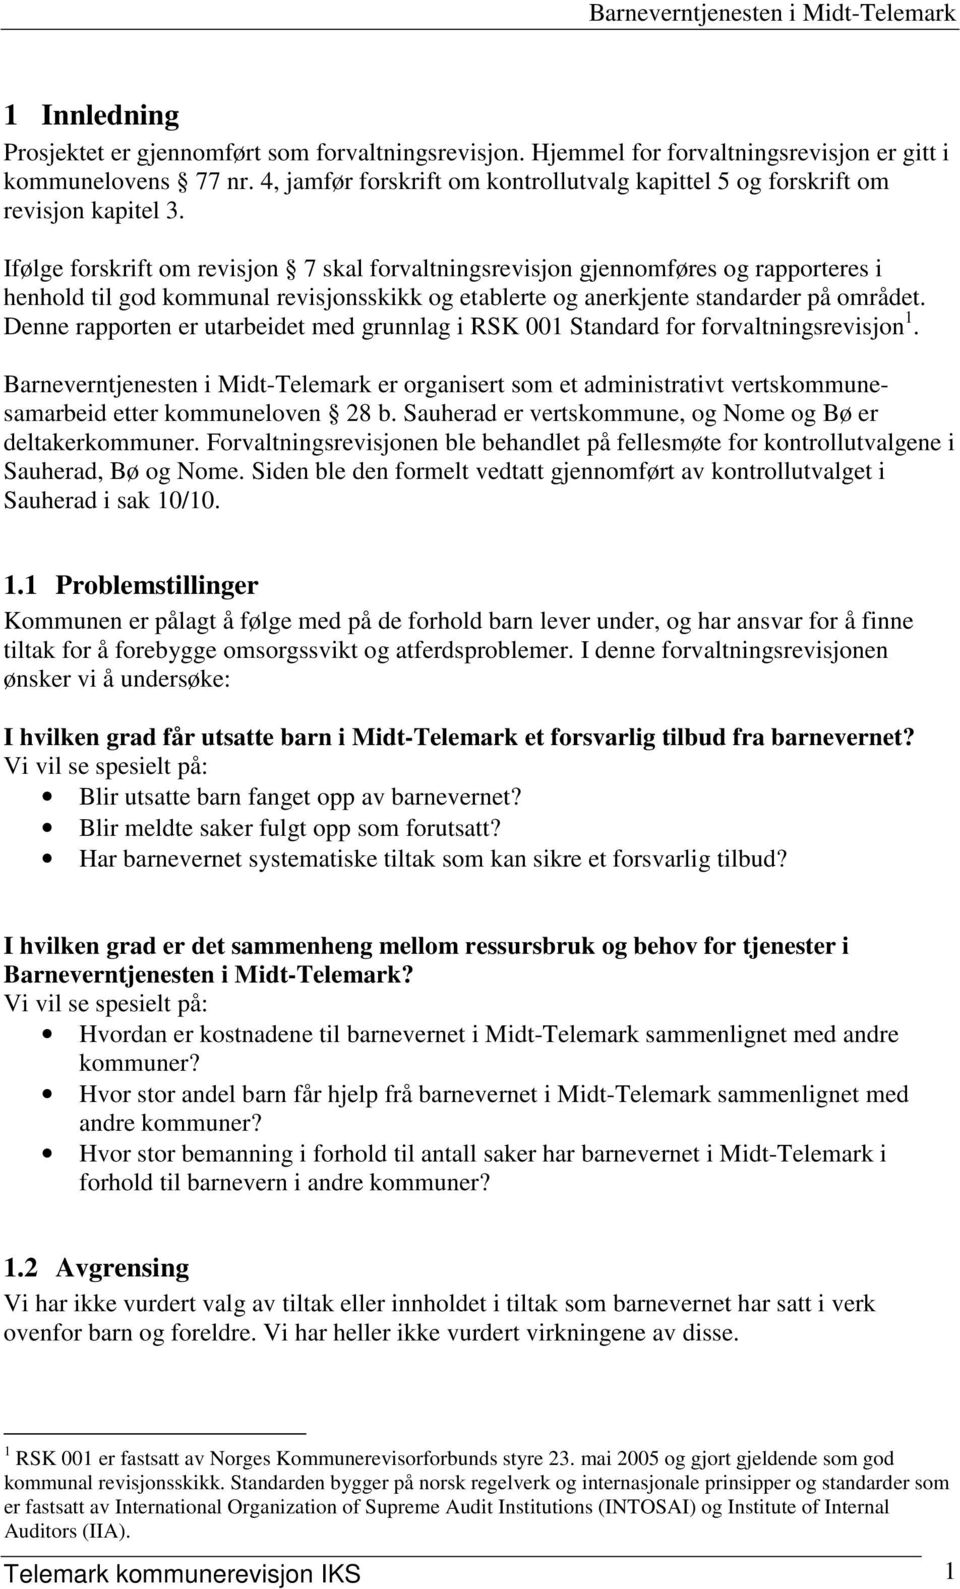 Barneverntjenesten i Midt-Telemark - PDF Gratis nedlasting